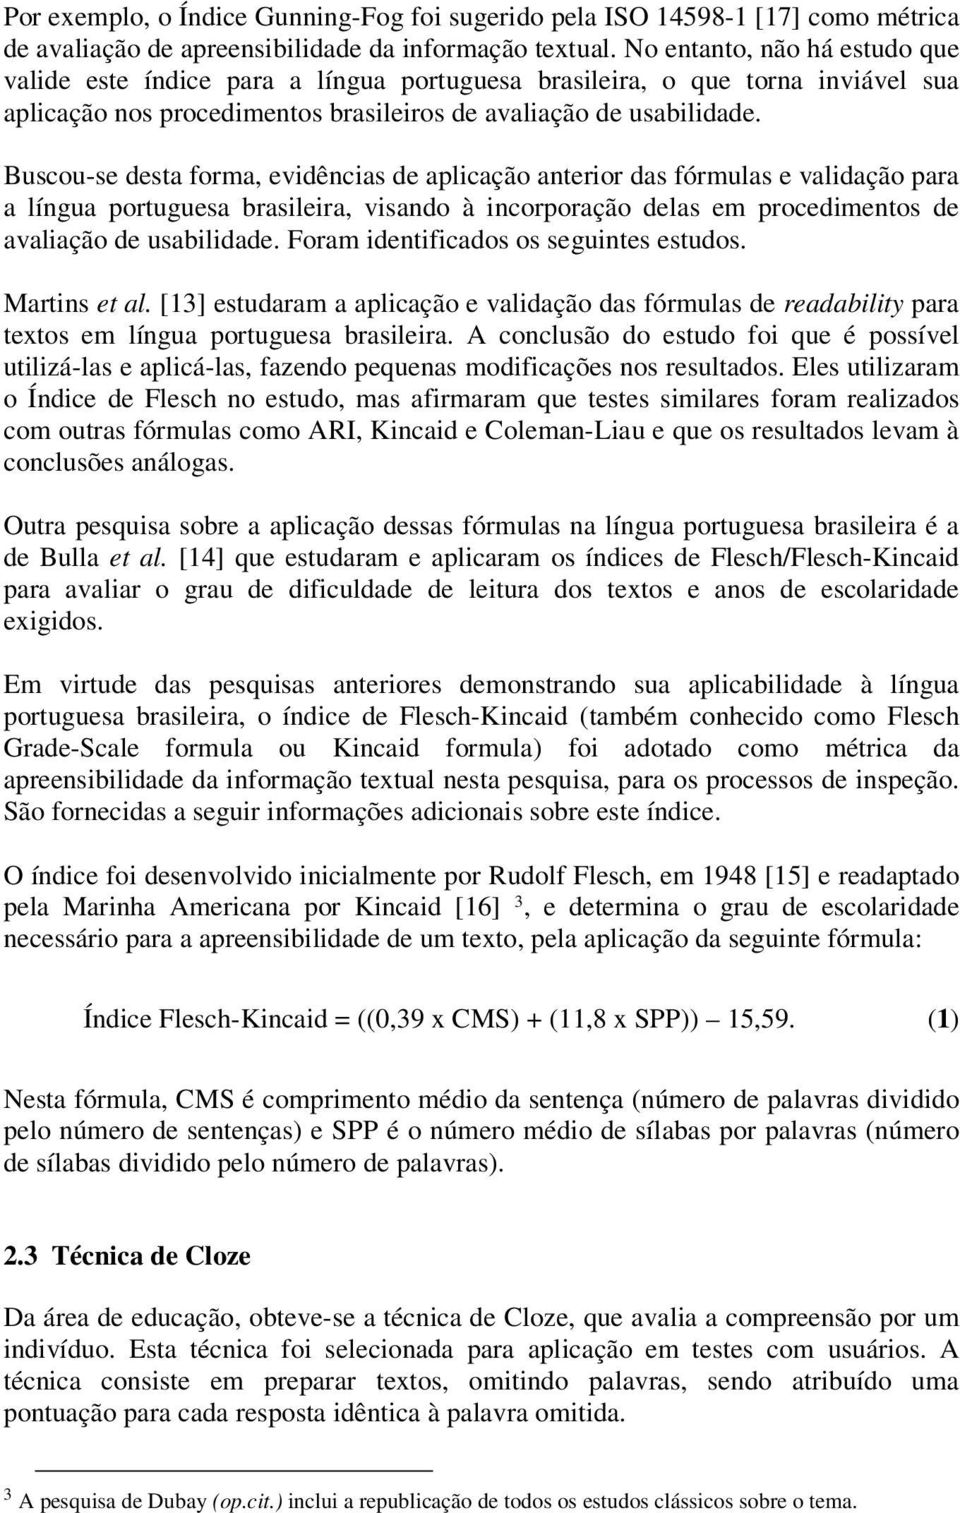 Buscou-se desta forma, evidências de aplicação anterior das fórmulas e validação para a língua portuguesa brasileira, visando à incorporação delas em procedimentos de avaliação de usabilidade.